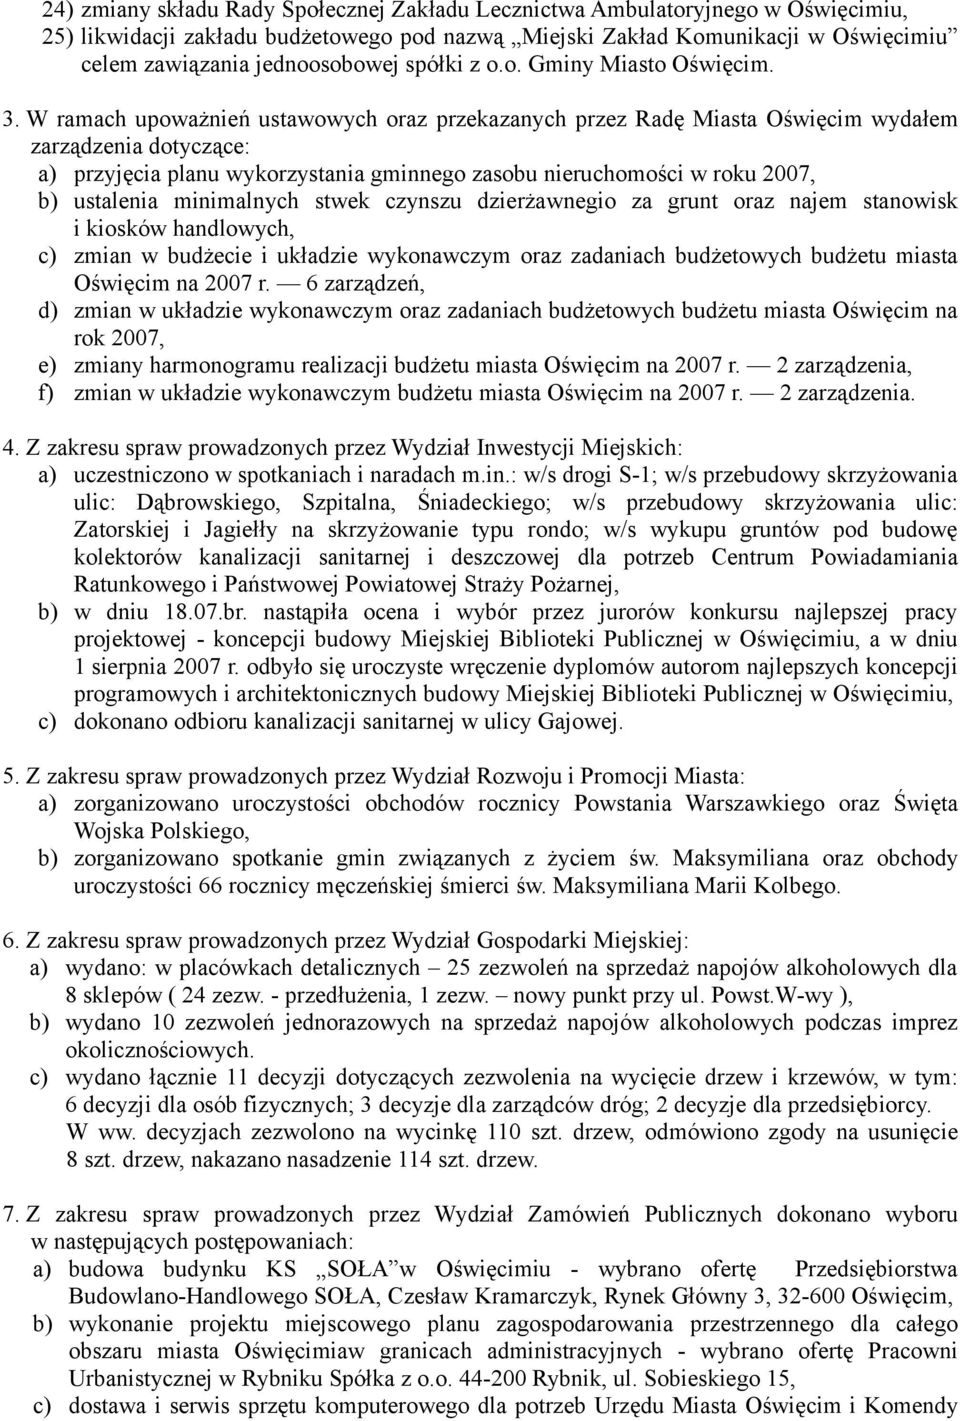 W ramach upoważnień ustawowych oraz przekazanych przez Radę Miasta Oświęcim wydałem zarządzenia dotyczące: a) przyjęcia planu wykorzystania gminnego zasobu nieruchomości w roku 2007, b) ustalenia